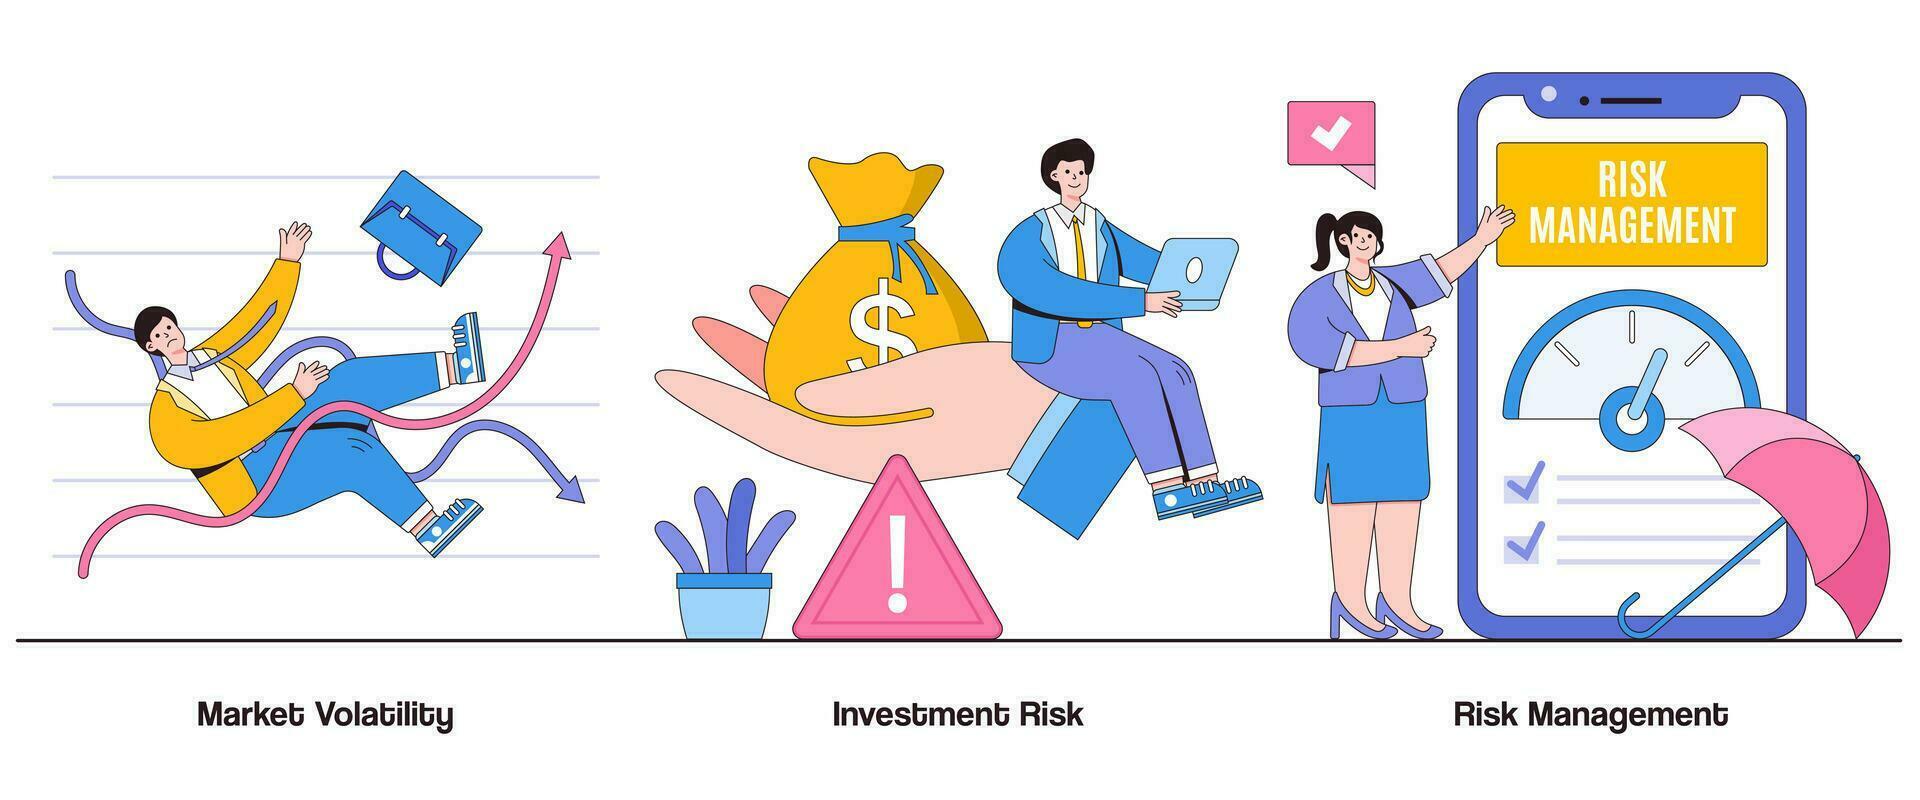 mercado volatilidade, investimento risco, risco gestão conceito com personagem. risco gestão abstrato vetor ilustração definir. investimento segurança, risco mitigação, financeiro estabilidade metáfora